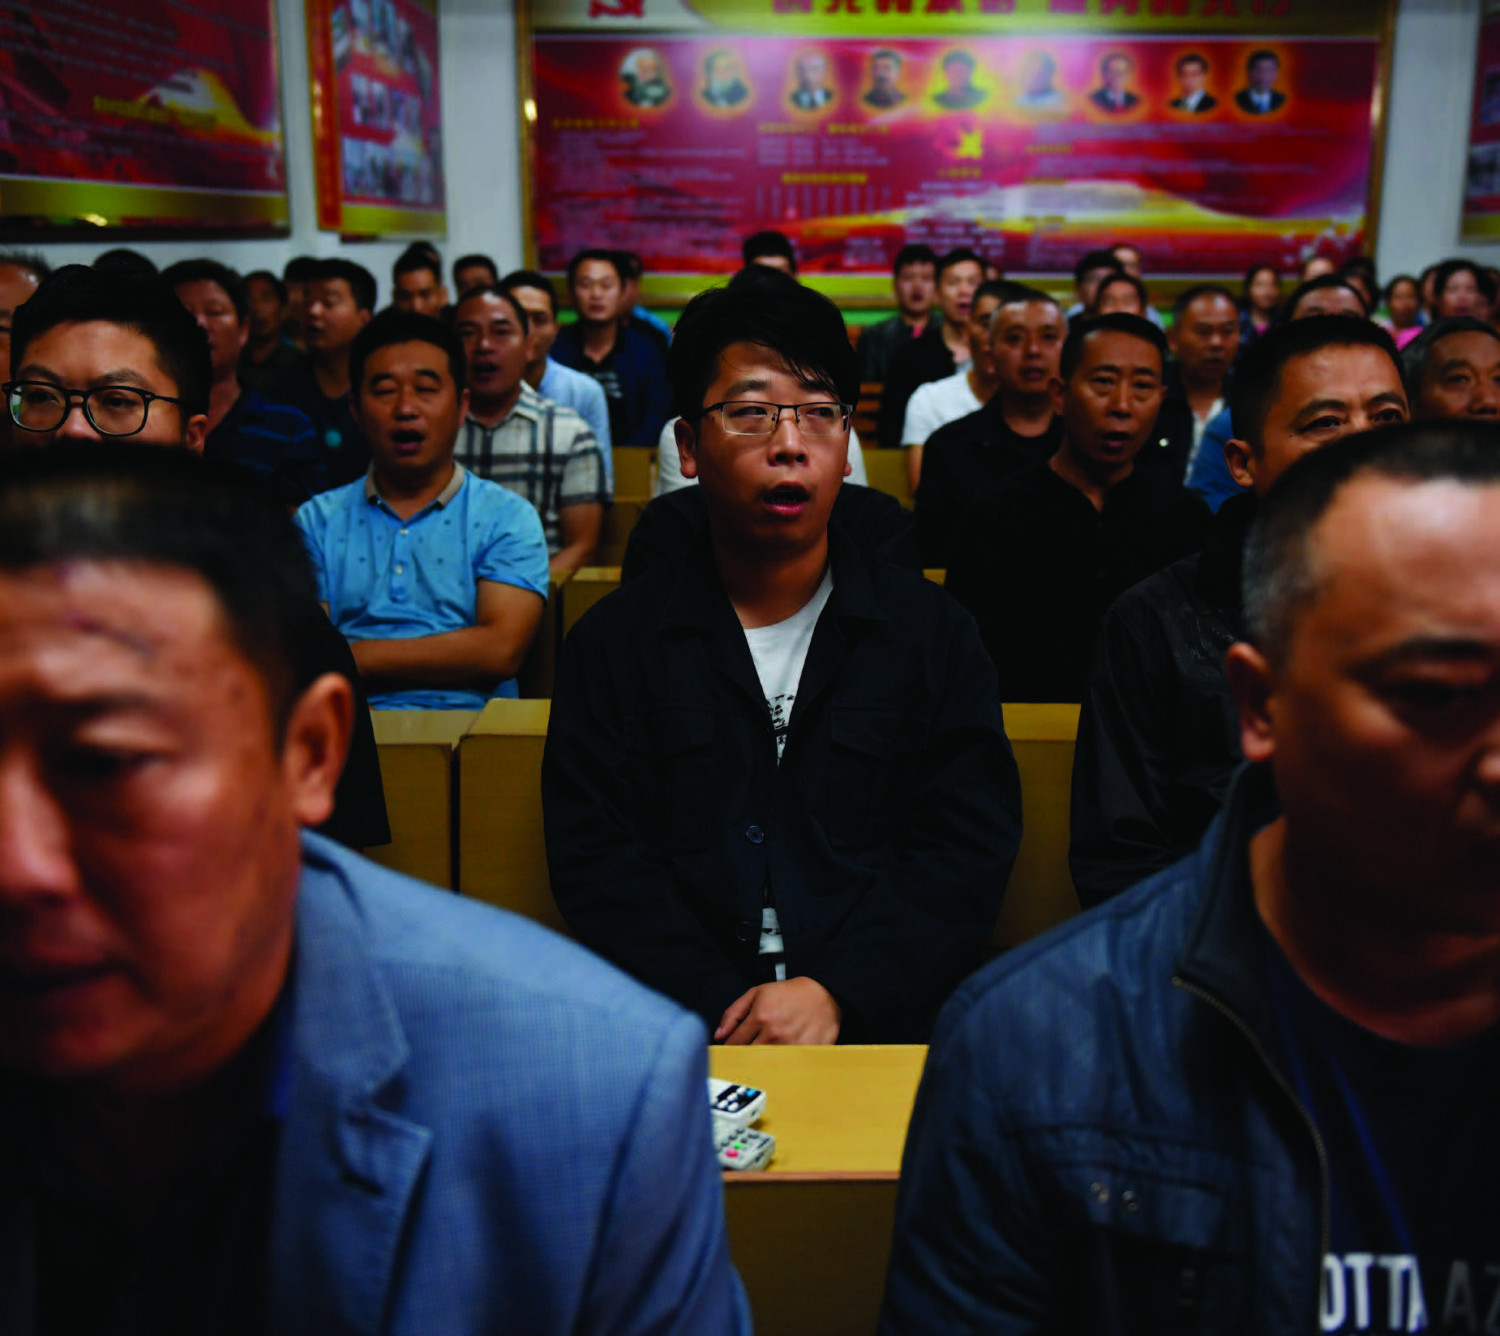 Gerentes de fábricas cantam canções vermelhas comunistas no início do seu dia de trabalho no vilarejo de Nanjie, na região central da província de Henan, em 27 de setembro de 2017 (Greg Baker/AFP/Getty Images)